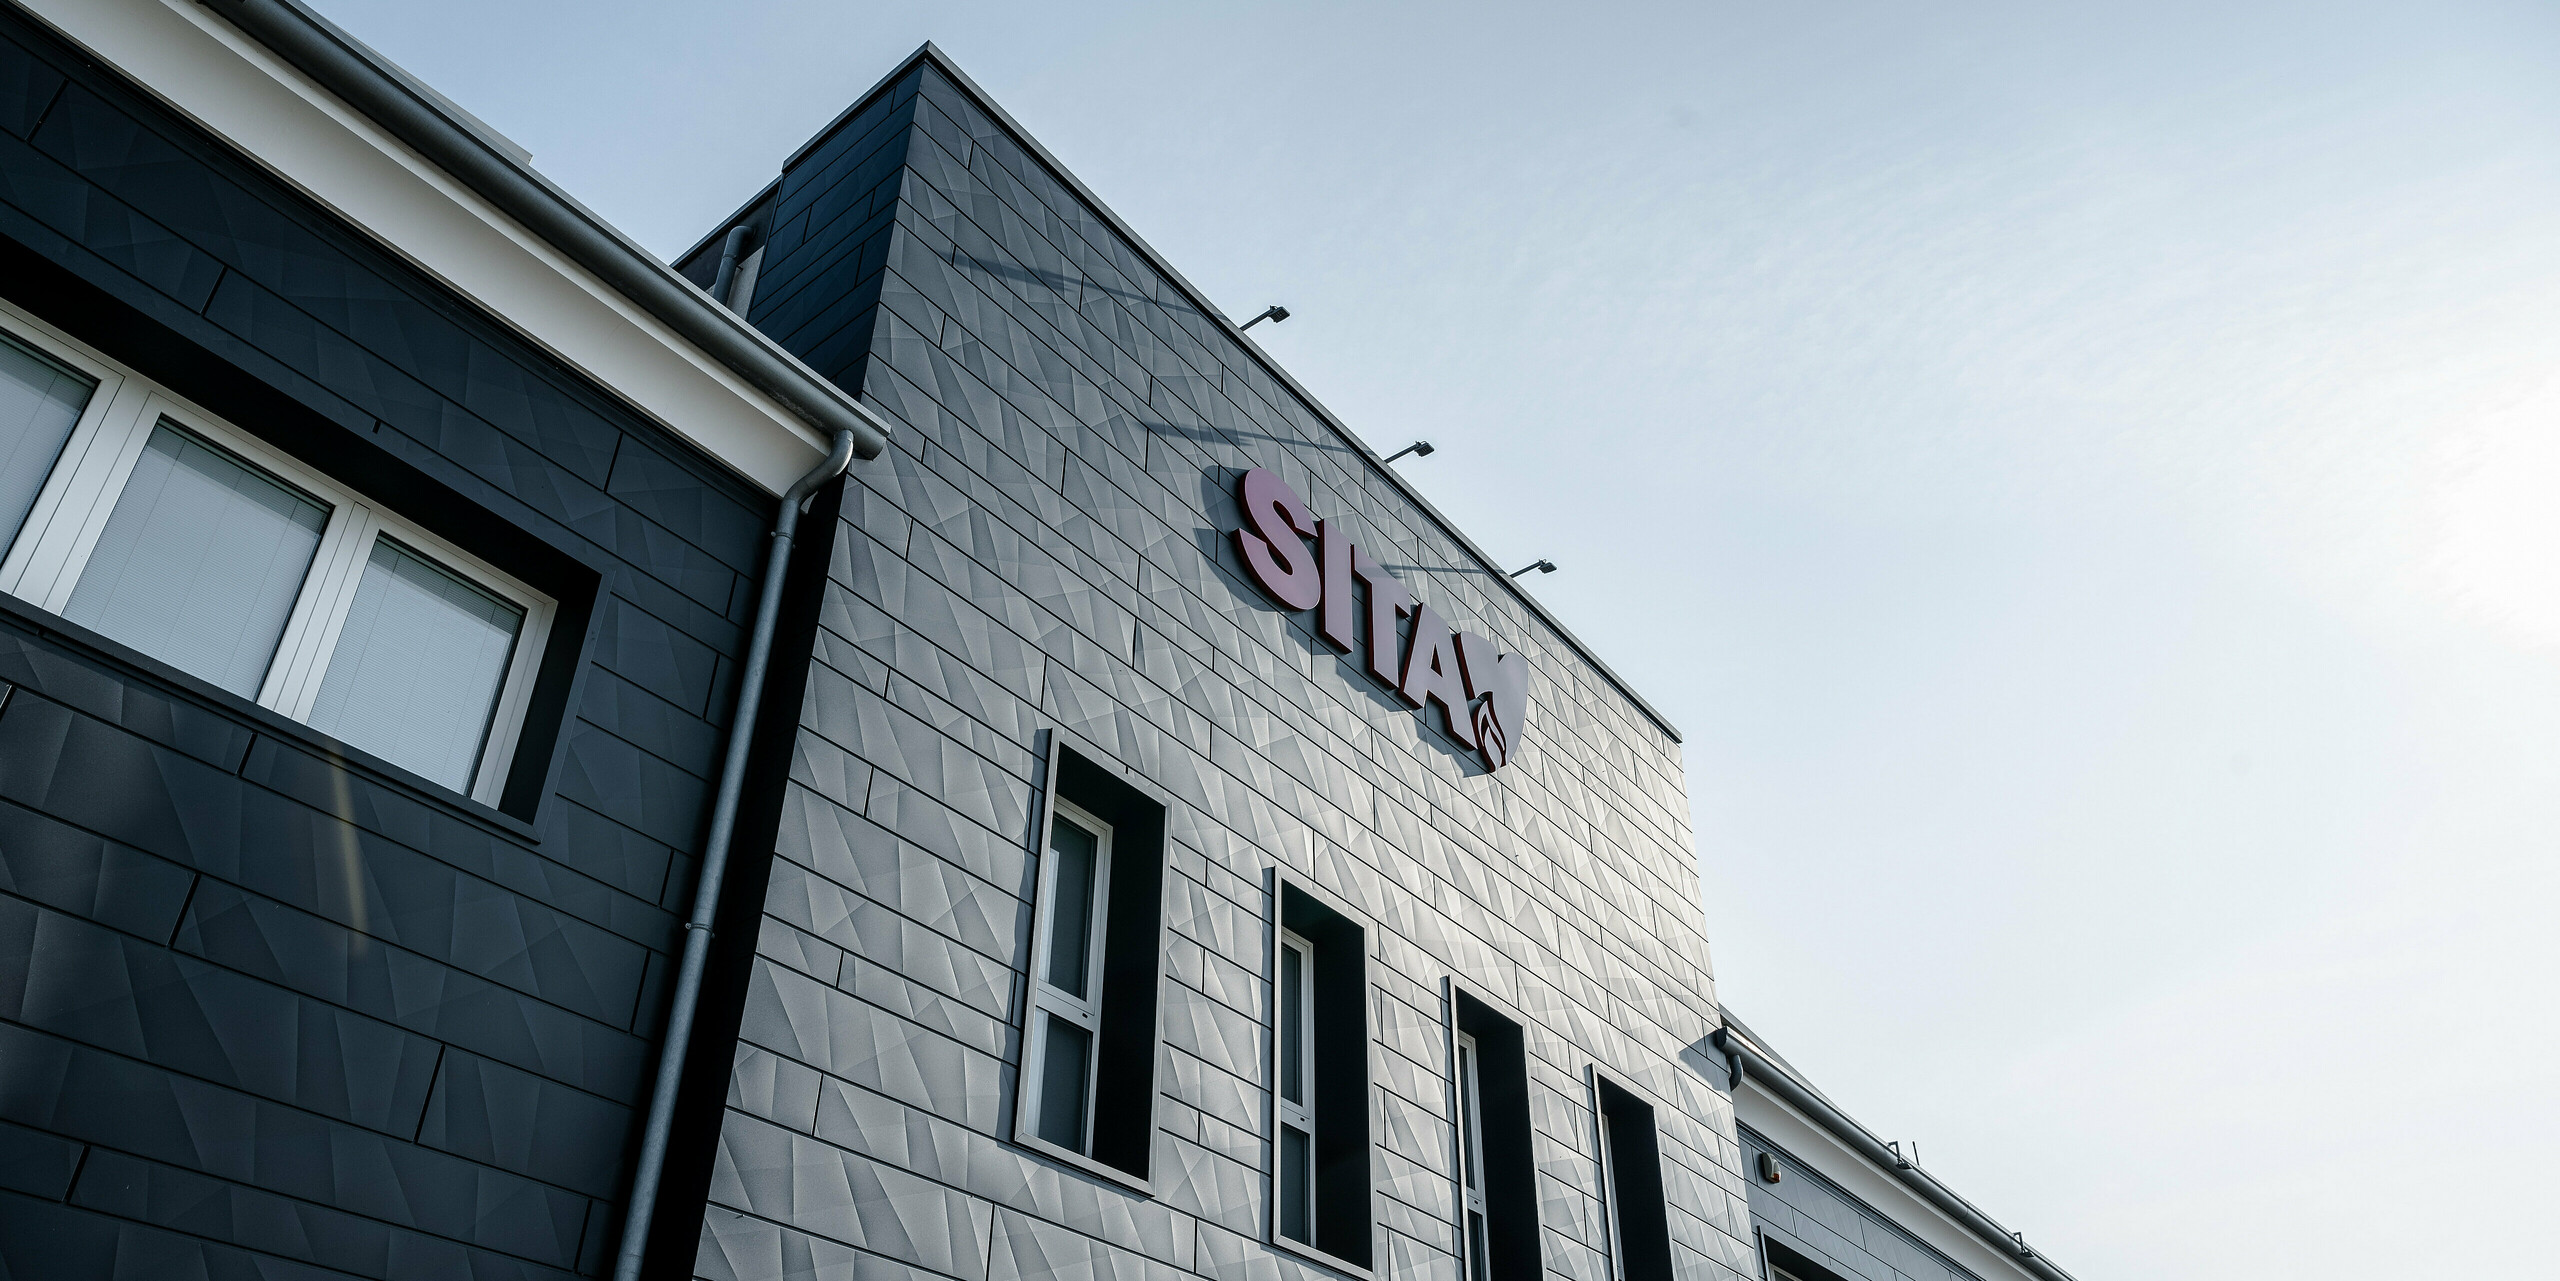 Dynamický pohľad na pôsobivú budovu spoločnosti SITA v talianskom Porcellengu s fasádou PREFA Siding.X v čiernej farbe P.10, ktorá vyniká na modrej oblohe. Fasádne panely odrážajú slnečné svetlo a vytvárajú hru svetla a tieňa, ktorá zdôrazňuje geometrický tvar a kvalitu hliníkového fasádneho systému. Logo spoločnosti vo výraznej červenej farbe tvorí výrazný kontrast ku kovovej fasáde a zdôrazňuje moderný a profesionálny imidž spoločnosti. Tento imidž zdôrazňuje kombináciu funkčnosti a dizajnu, ktorú výrobky PREFA ponúkajú pre súčasné priemyselné budovy. Pod firemným nápisom sa nachádzajú štyri podlhovasté vertikálne okná. Niekoľko okien s bielymi okennými rámami možno rozoznať aj po stranách.